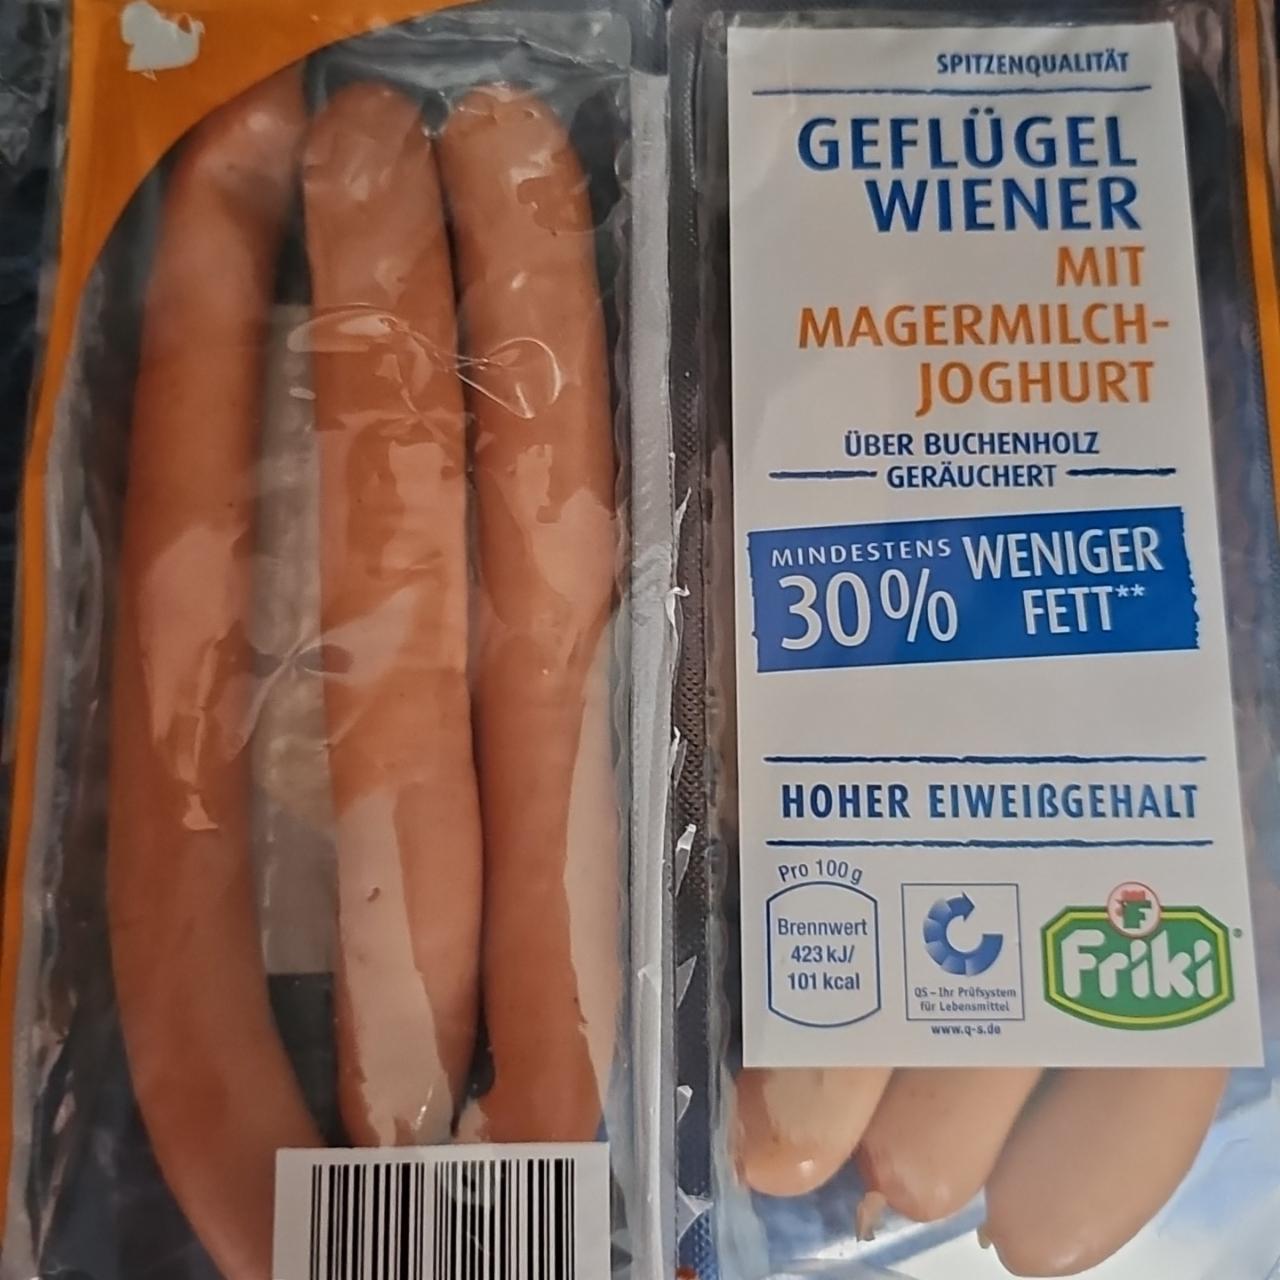 Fotografie - Geflügel Wiener mit Magermilch Joghurt Friki